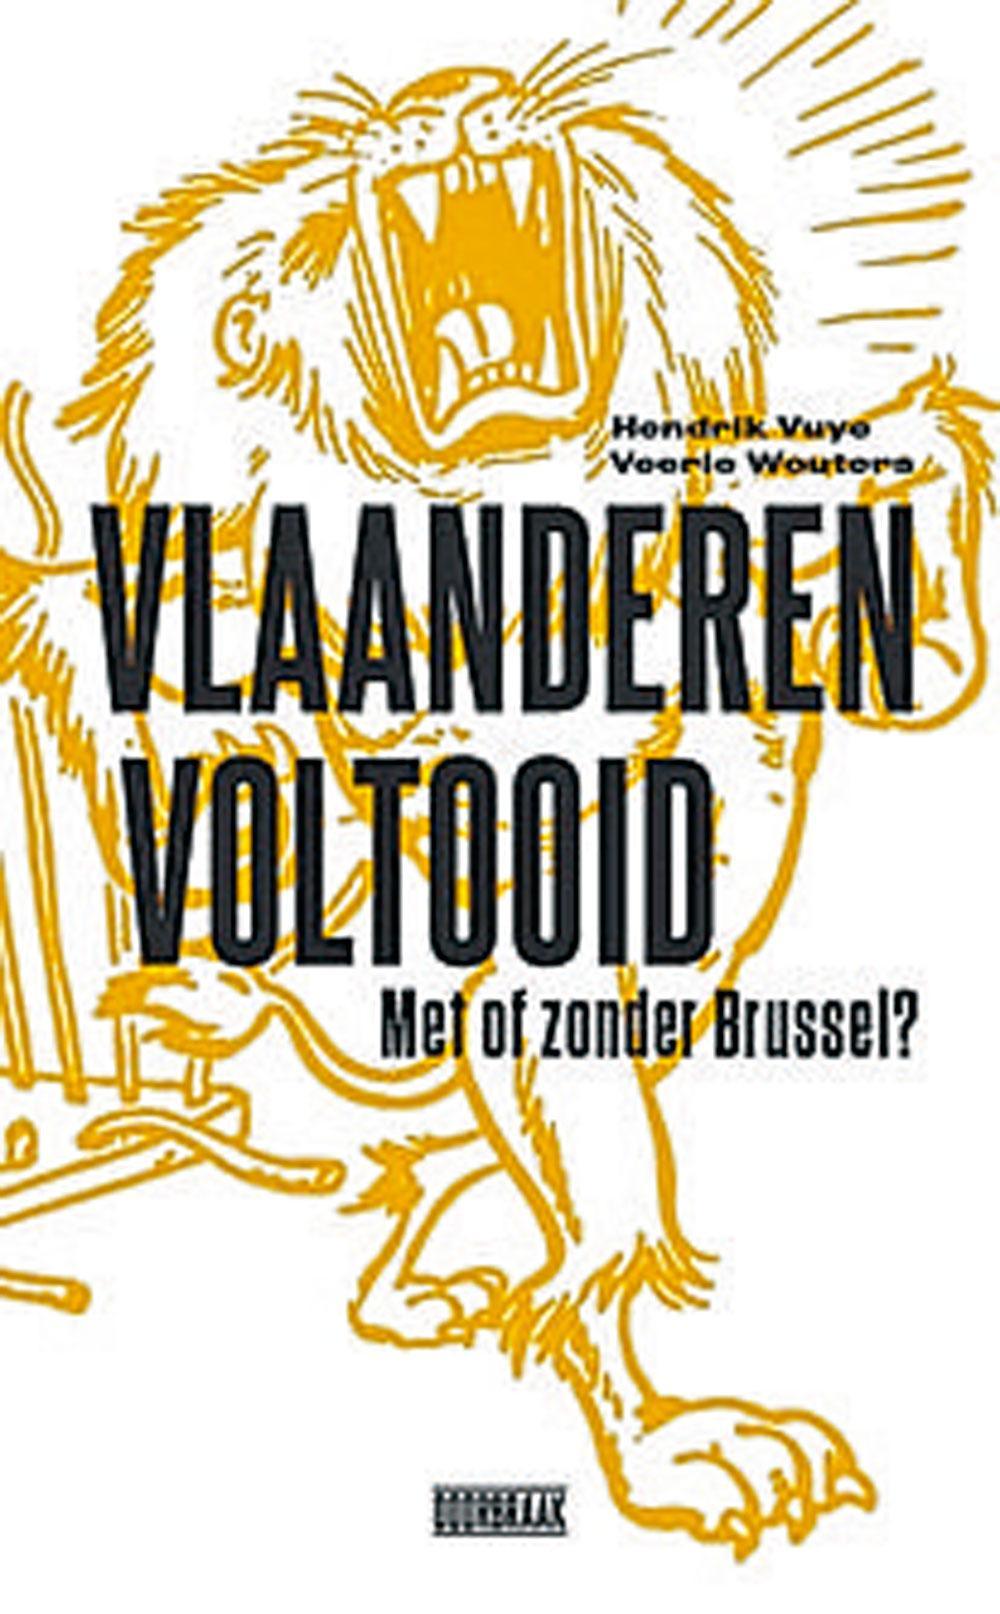 Vlaanderen voltooid. Met of zonder Brussel? van Hendrik Vuye en Veerle Wouters is uit bij Doorbraak Boeken.